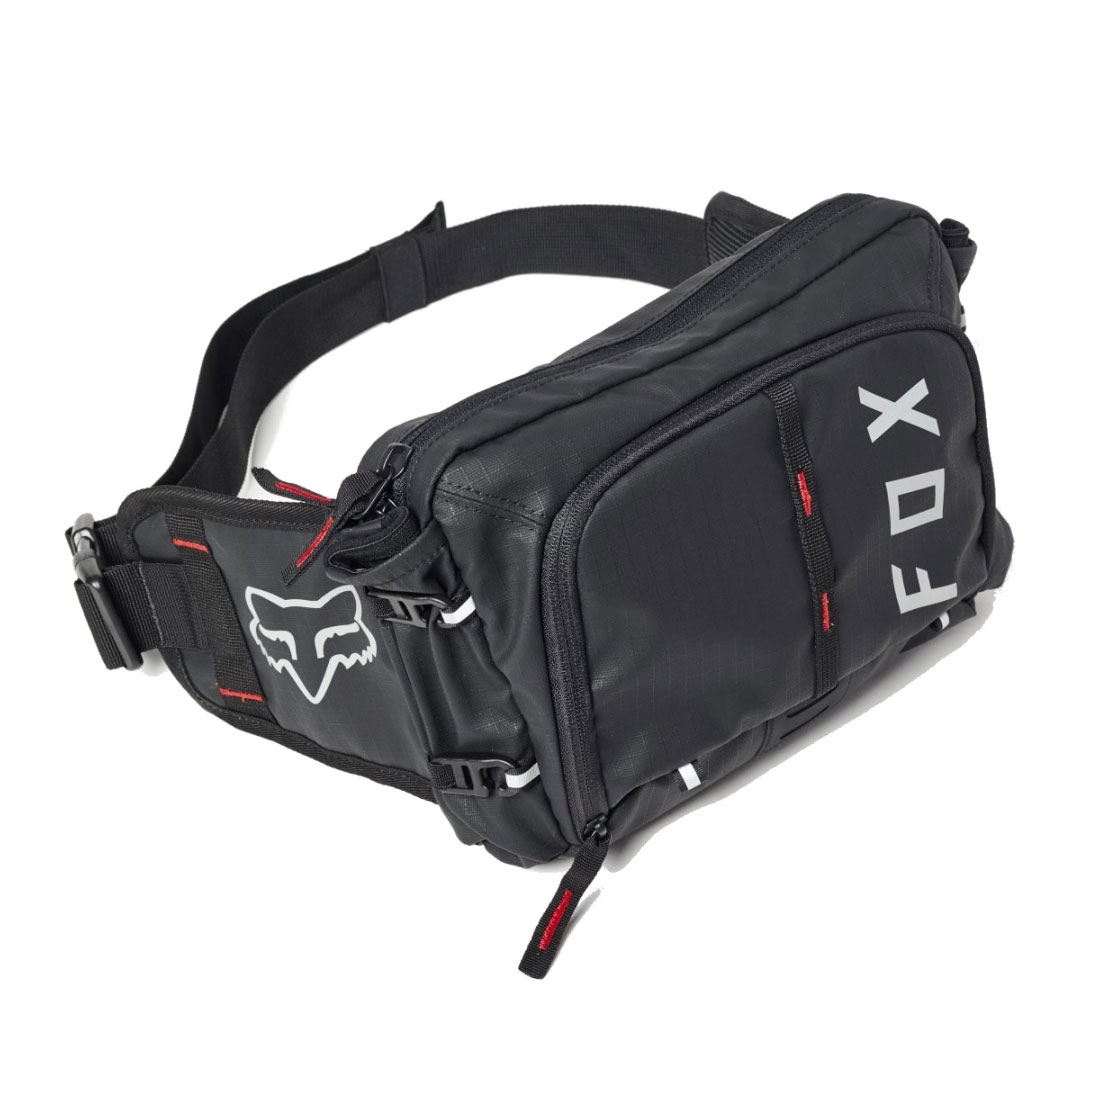 Produktbild von FOX Hüfttasche - schwarz